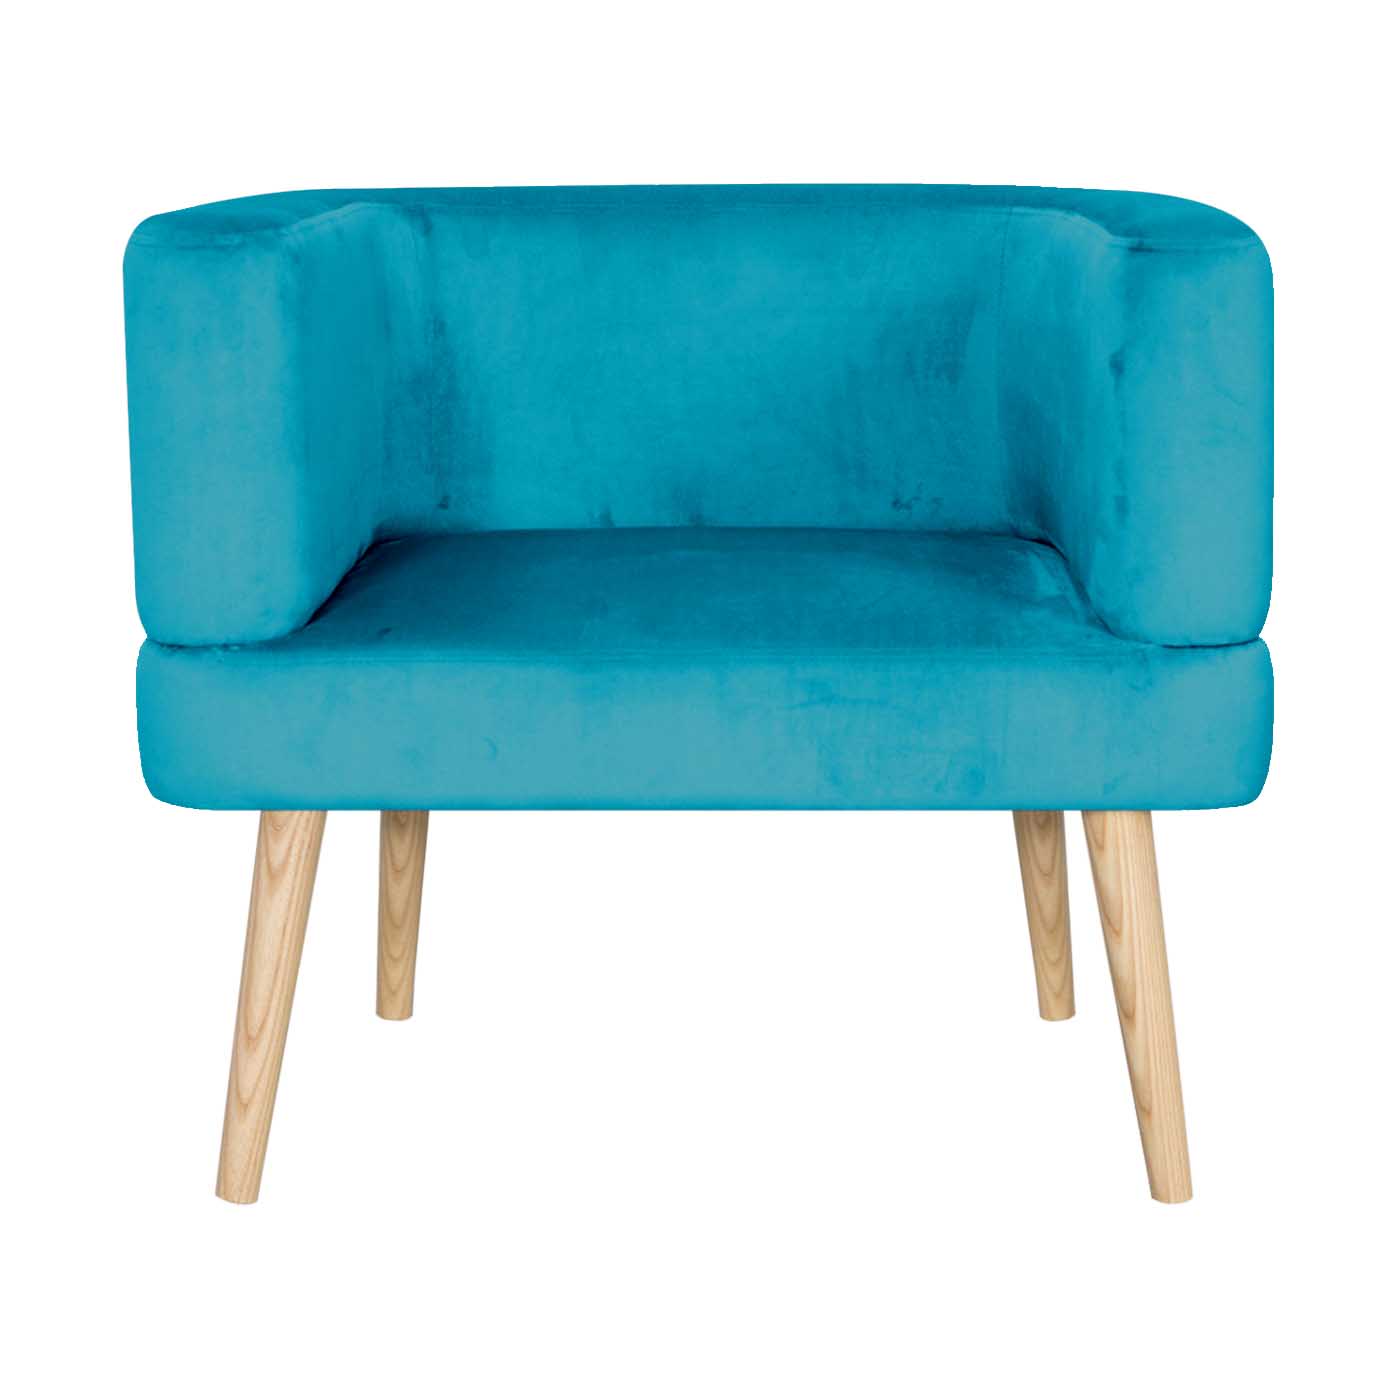 Dalian Turquoise Light Single Sofa